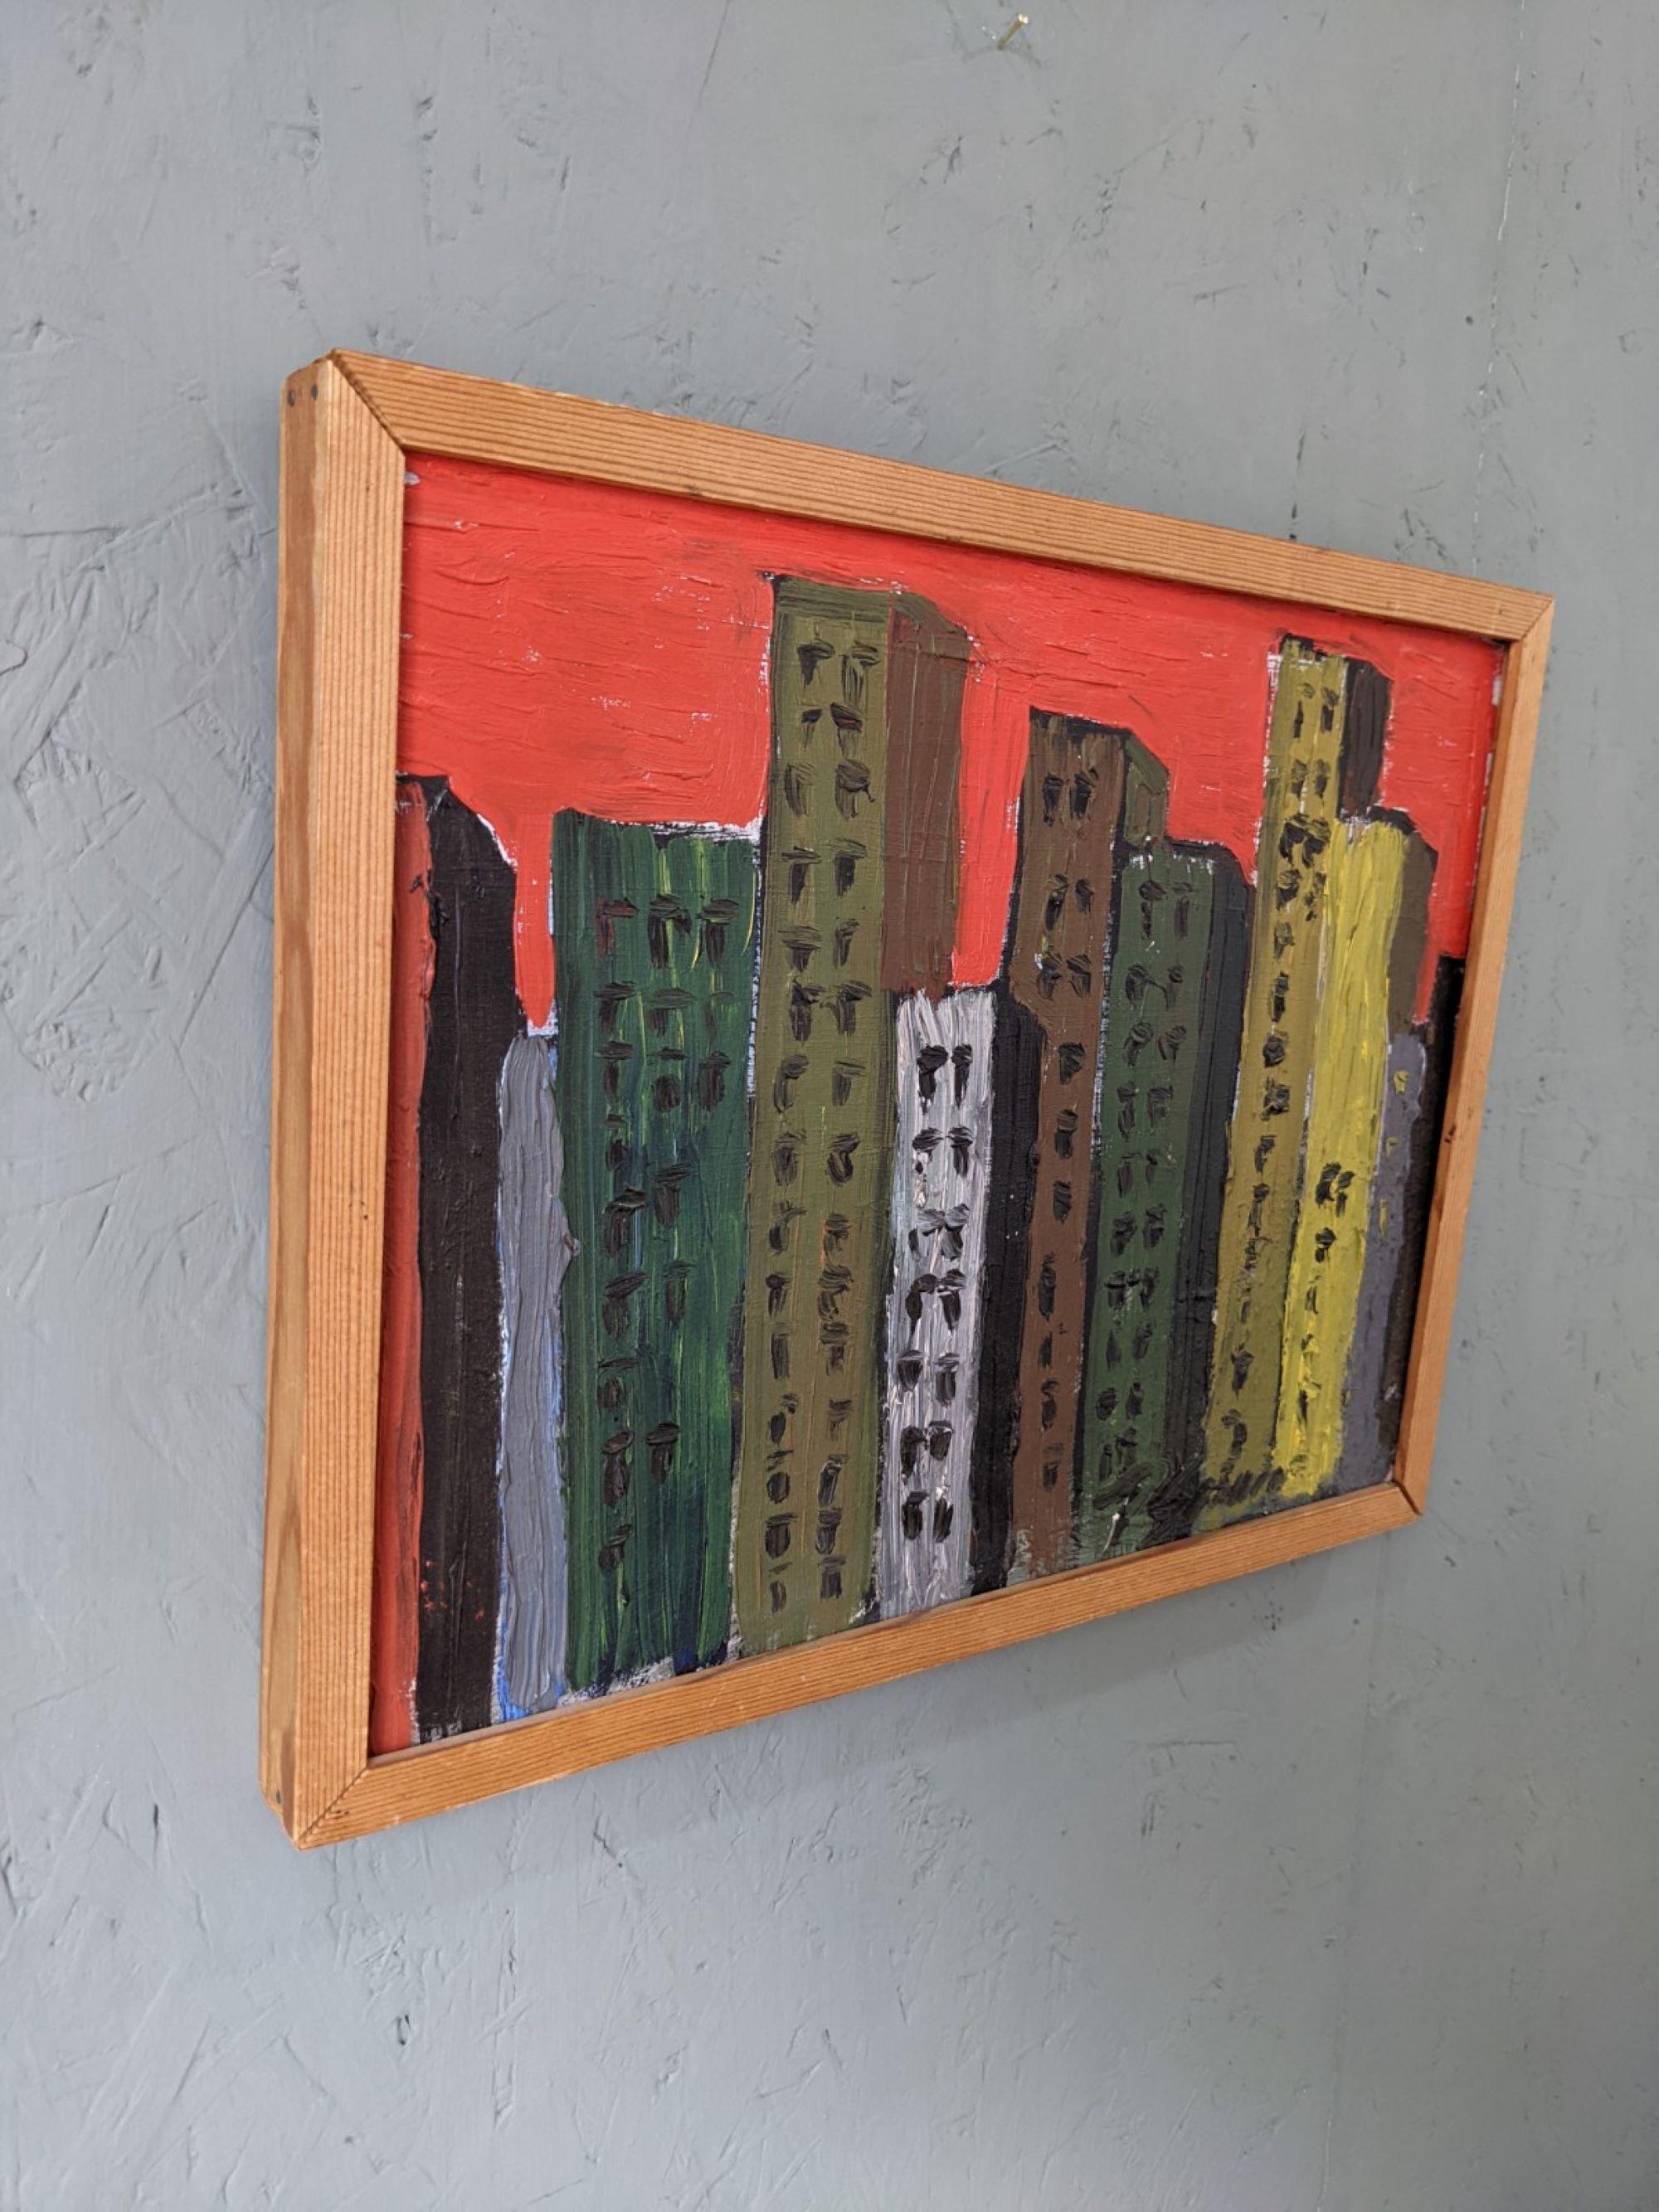 SKYLINE
Größe: 29 x 37 cm (einschließlich Rahmen)
Öl auf Karton

Eine kleine und lebendige modernistische Ölkomposition mit einer Stadtsilhouette, in der sich Reihen von hohen Gebäuden vor einem auffallend roten Hintergrund abheben.

Die Künstlerin